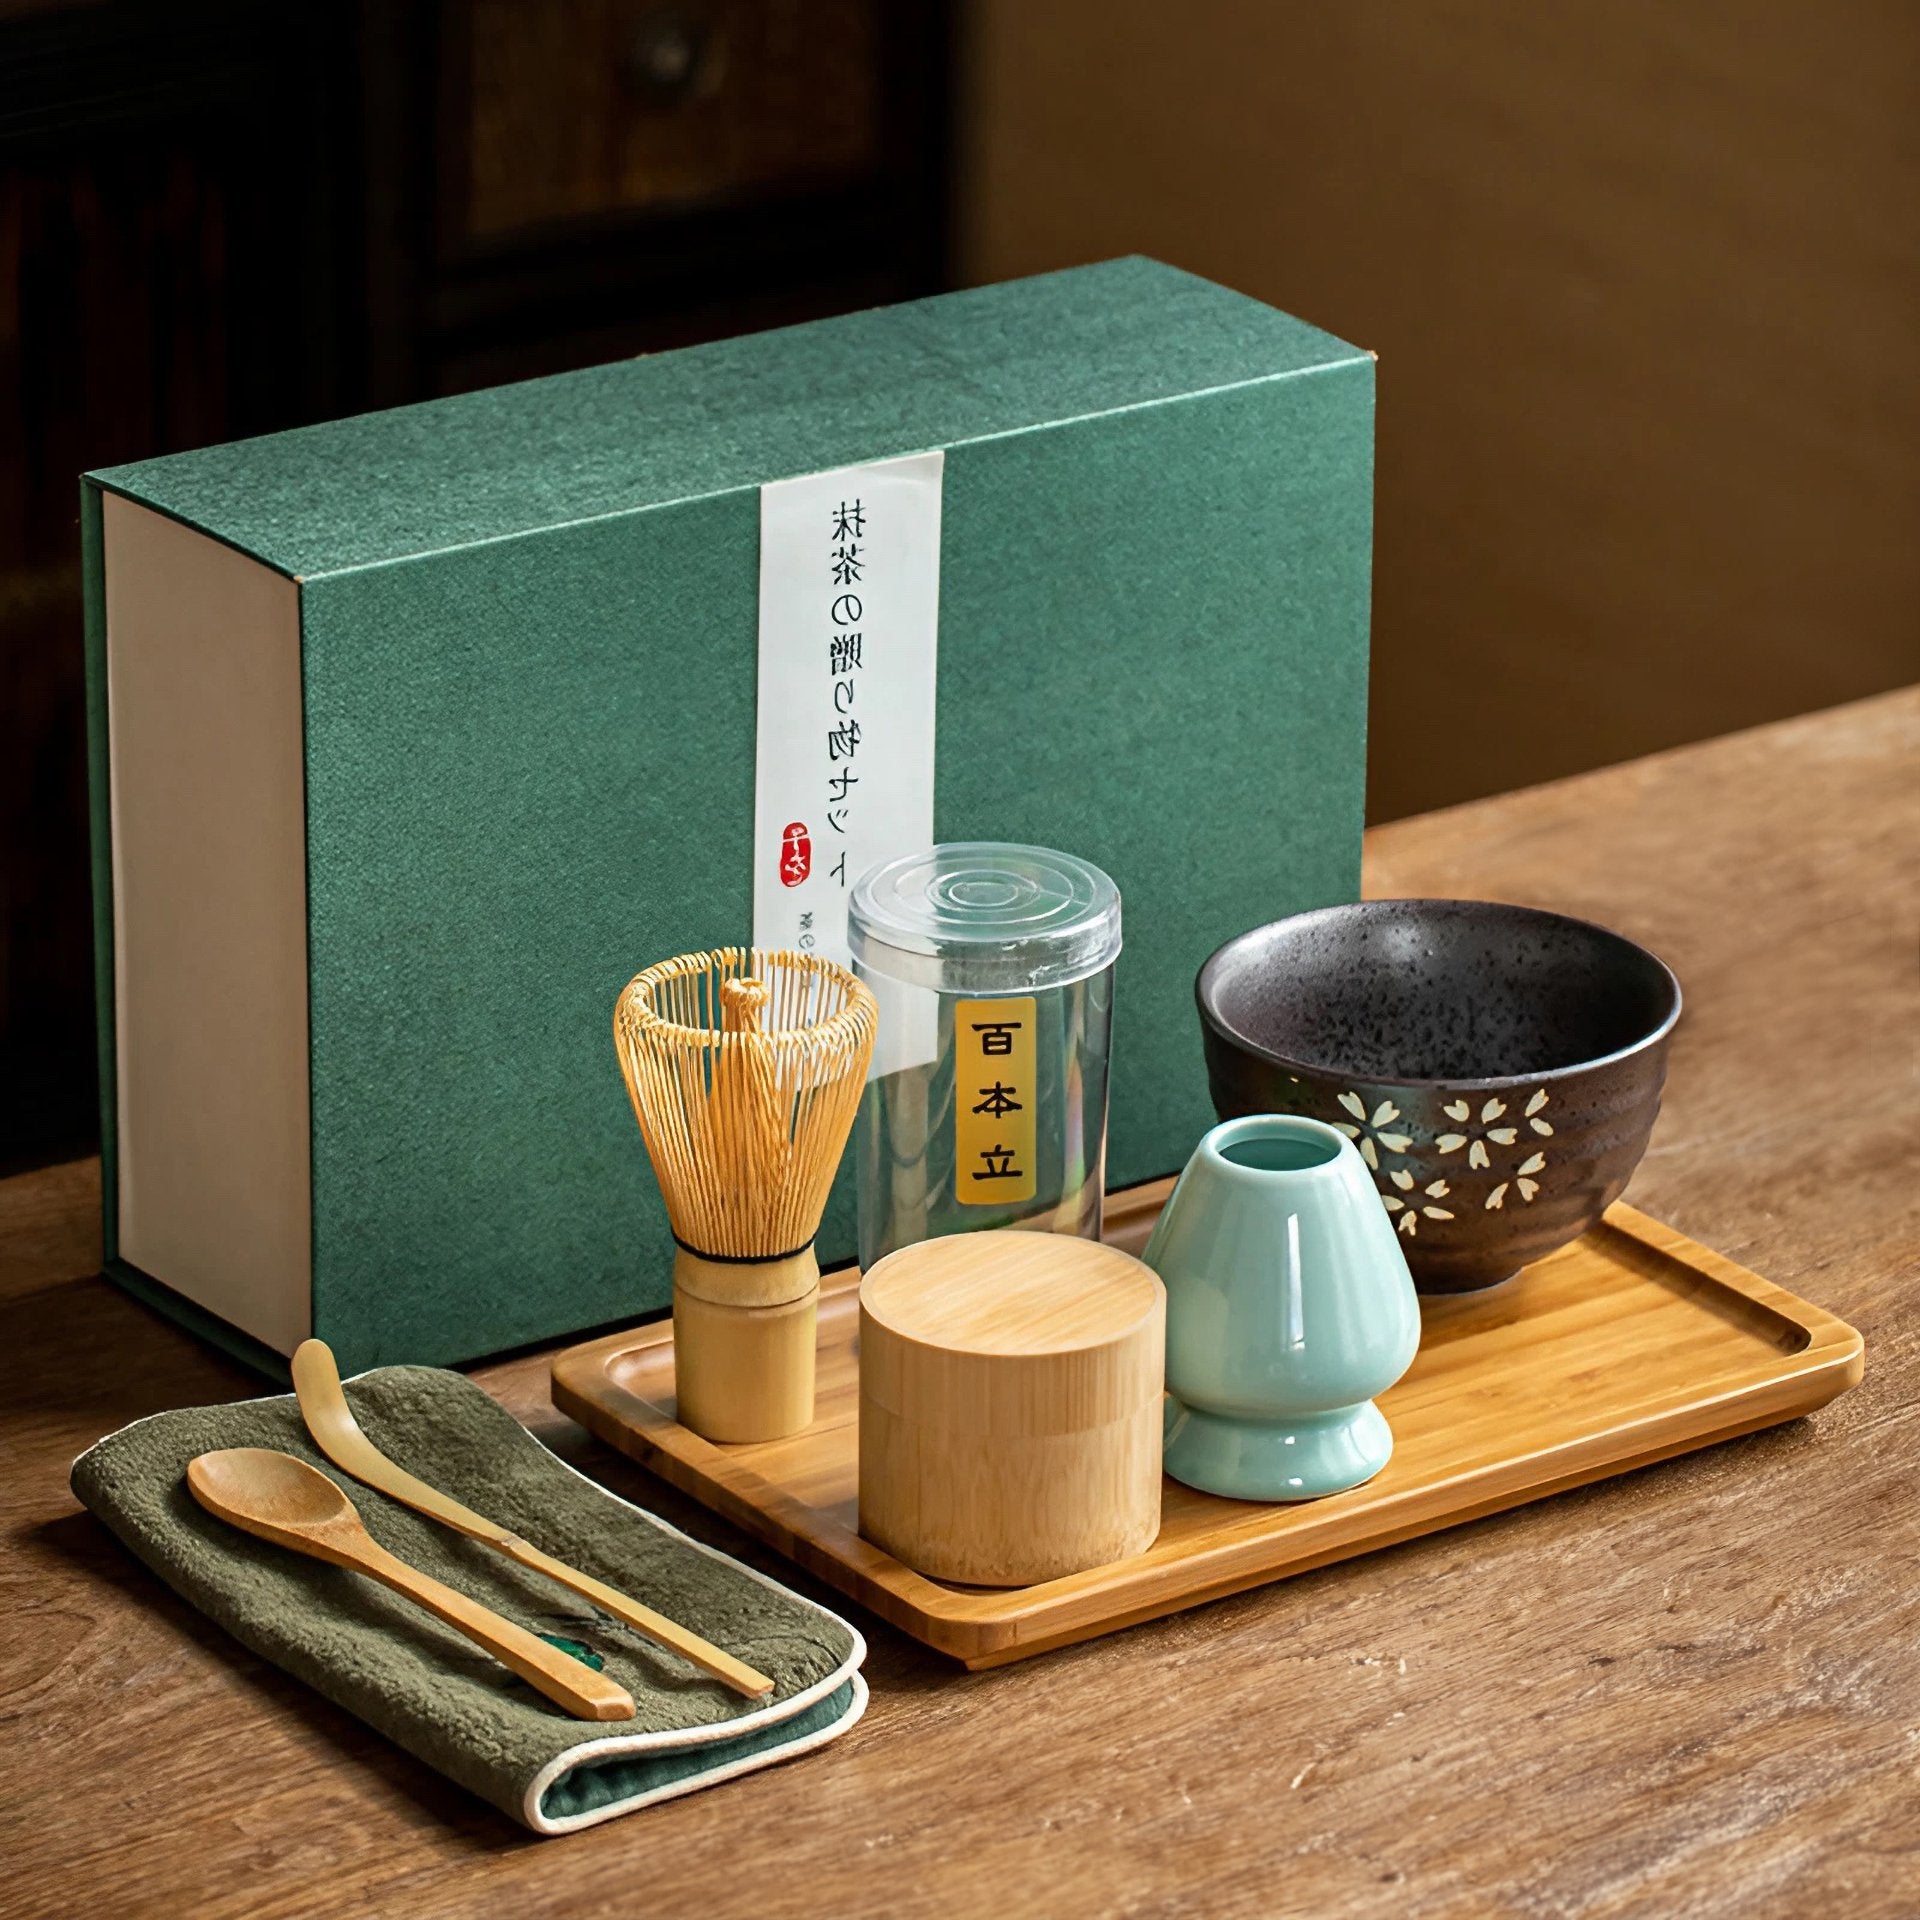 Japanese Matcha Tea Set Matcha Bowl Bamboo Whisk Holder Tray